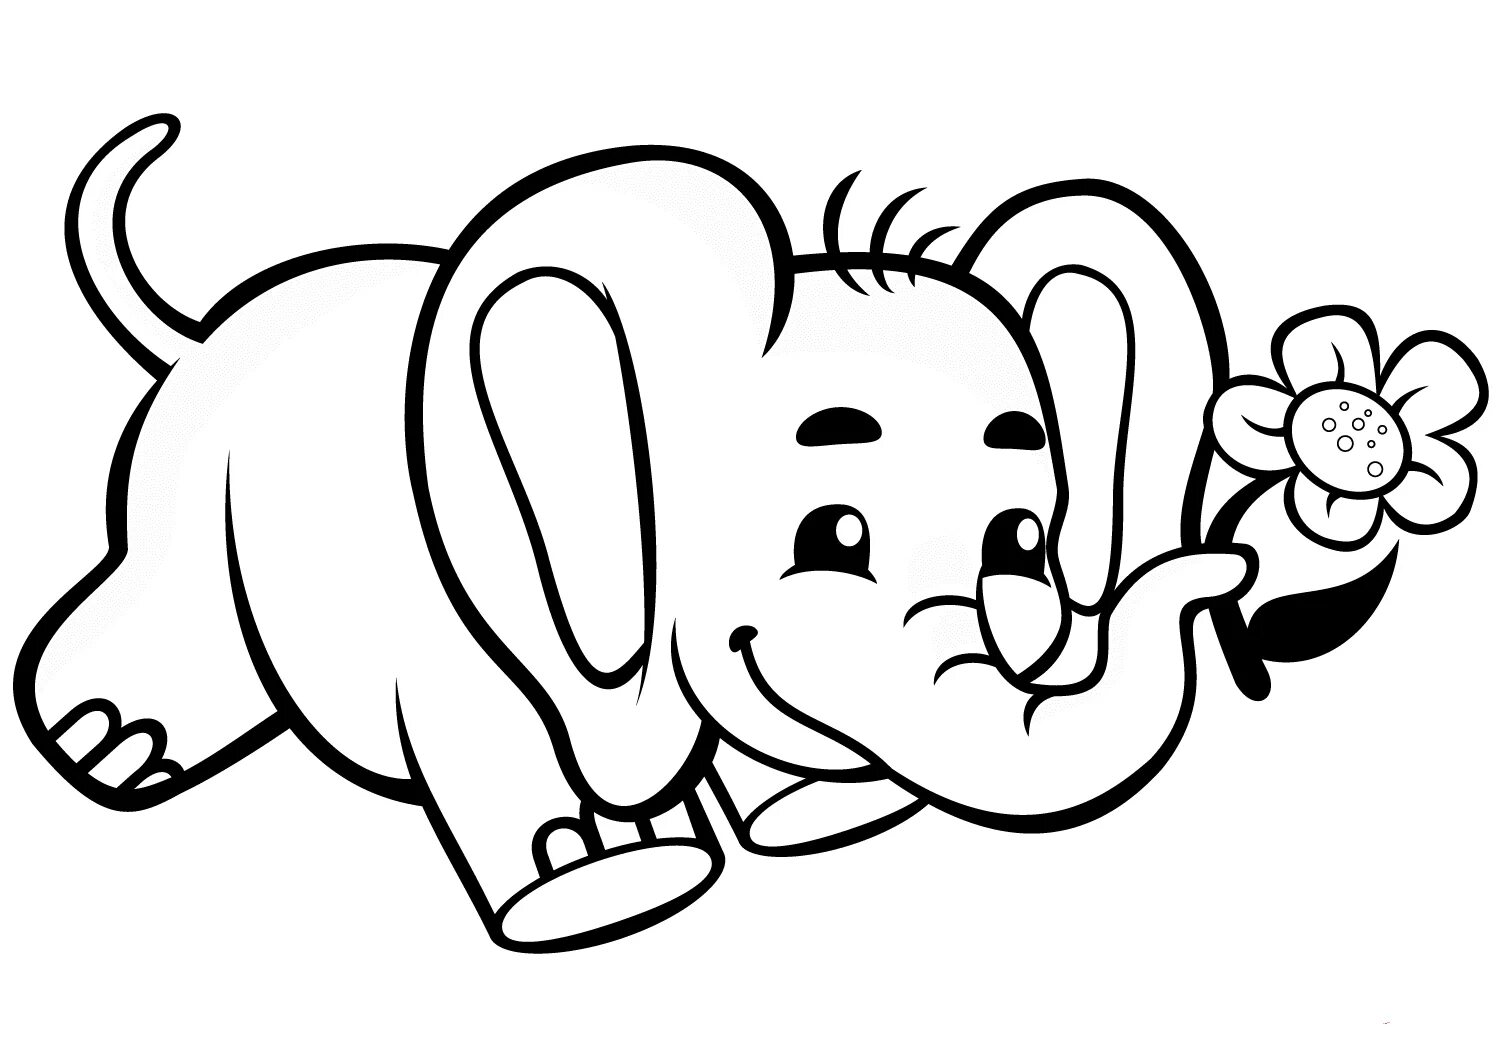 Baby elephant #2